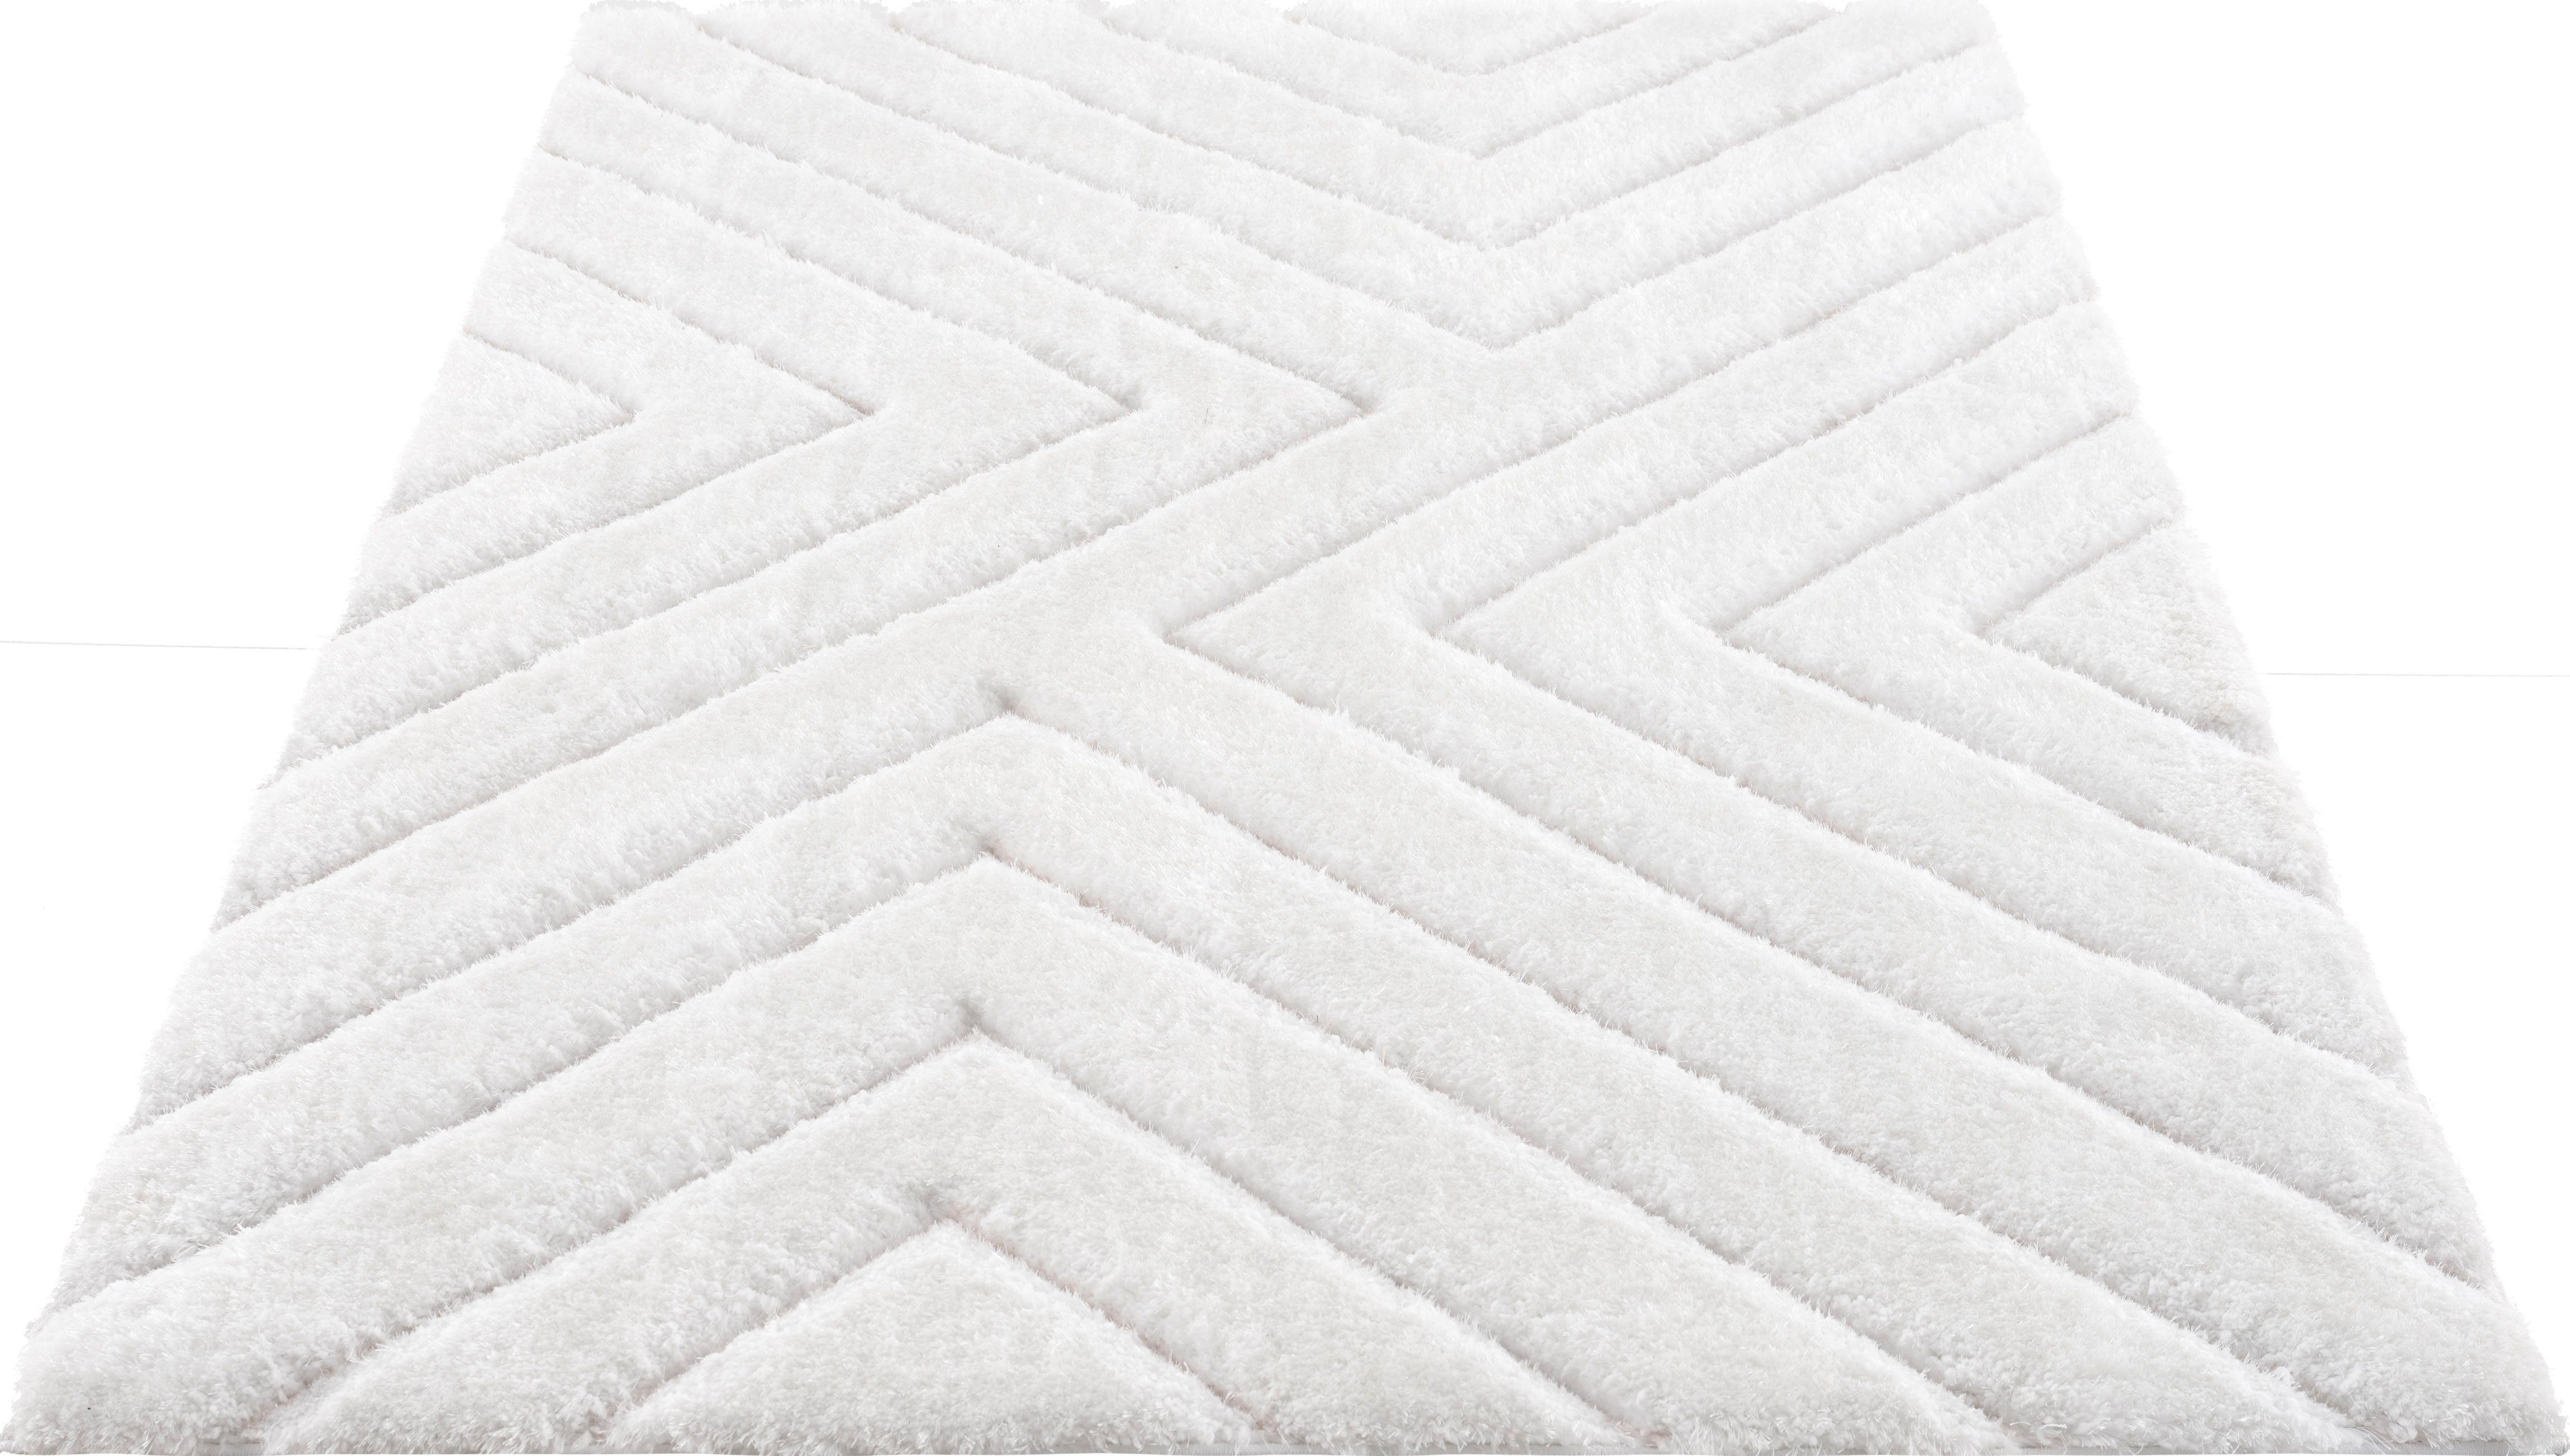 Hochflor-Teppich Fiori, andas, rechteckig, Höhe: 43 mm, Pastellfarben, mit handgearbeitetem Konturenschnitt, Teppich,Hochlor